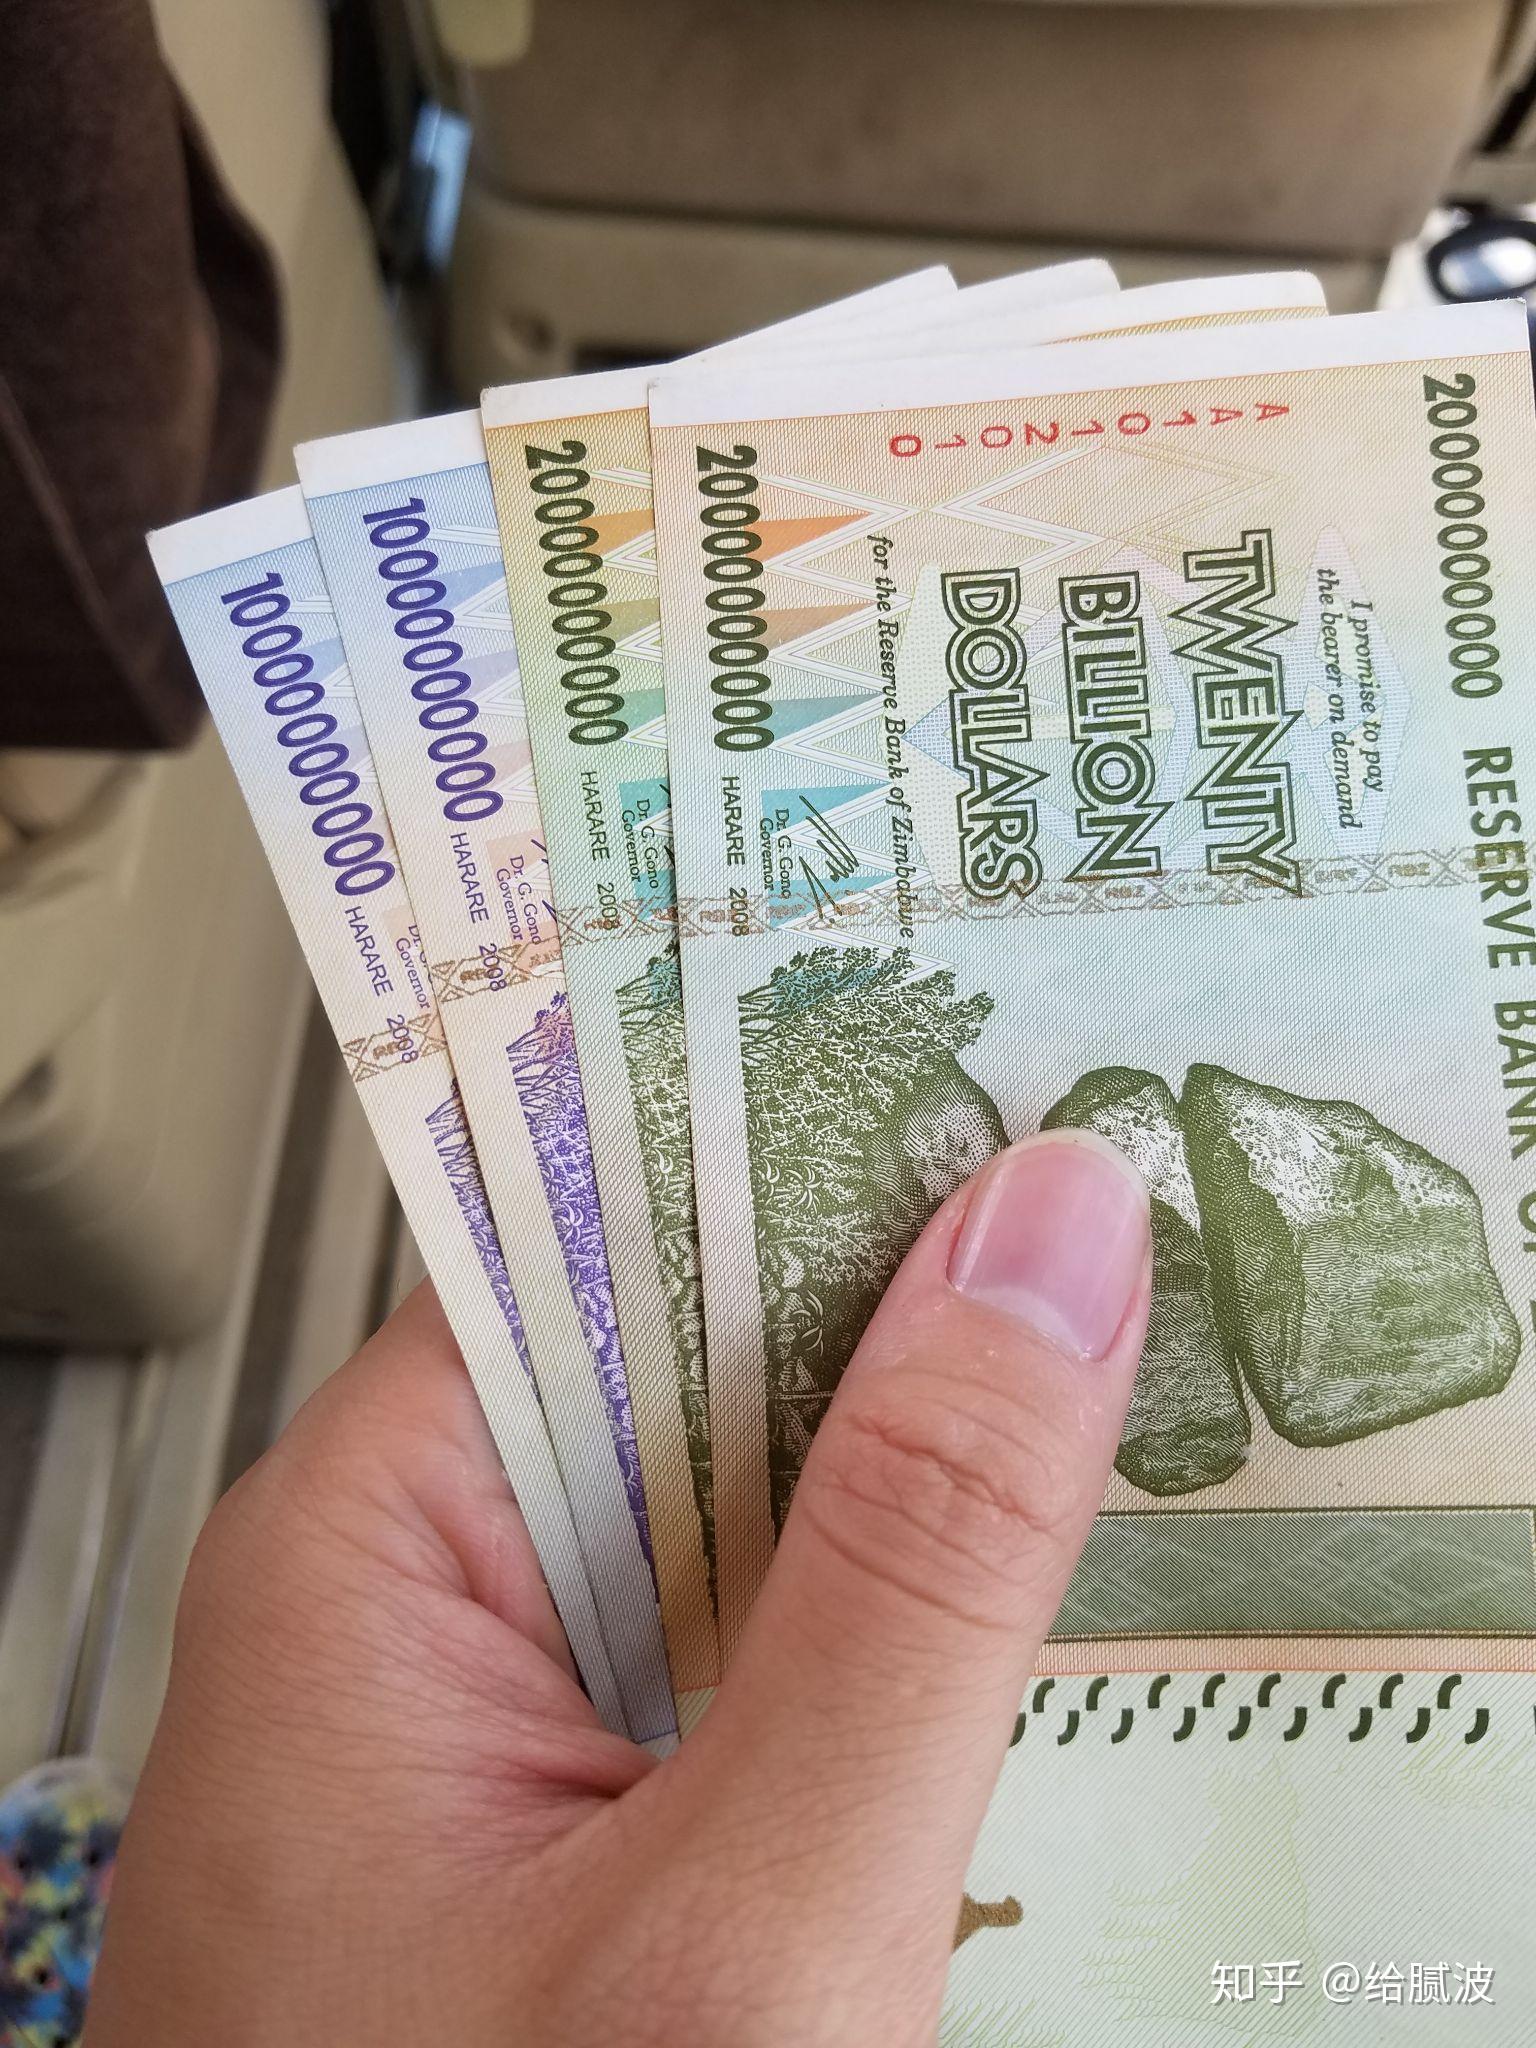 津巴布韦拟使用人民币作为法定货币,这意味着什么?